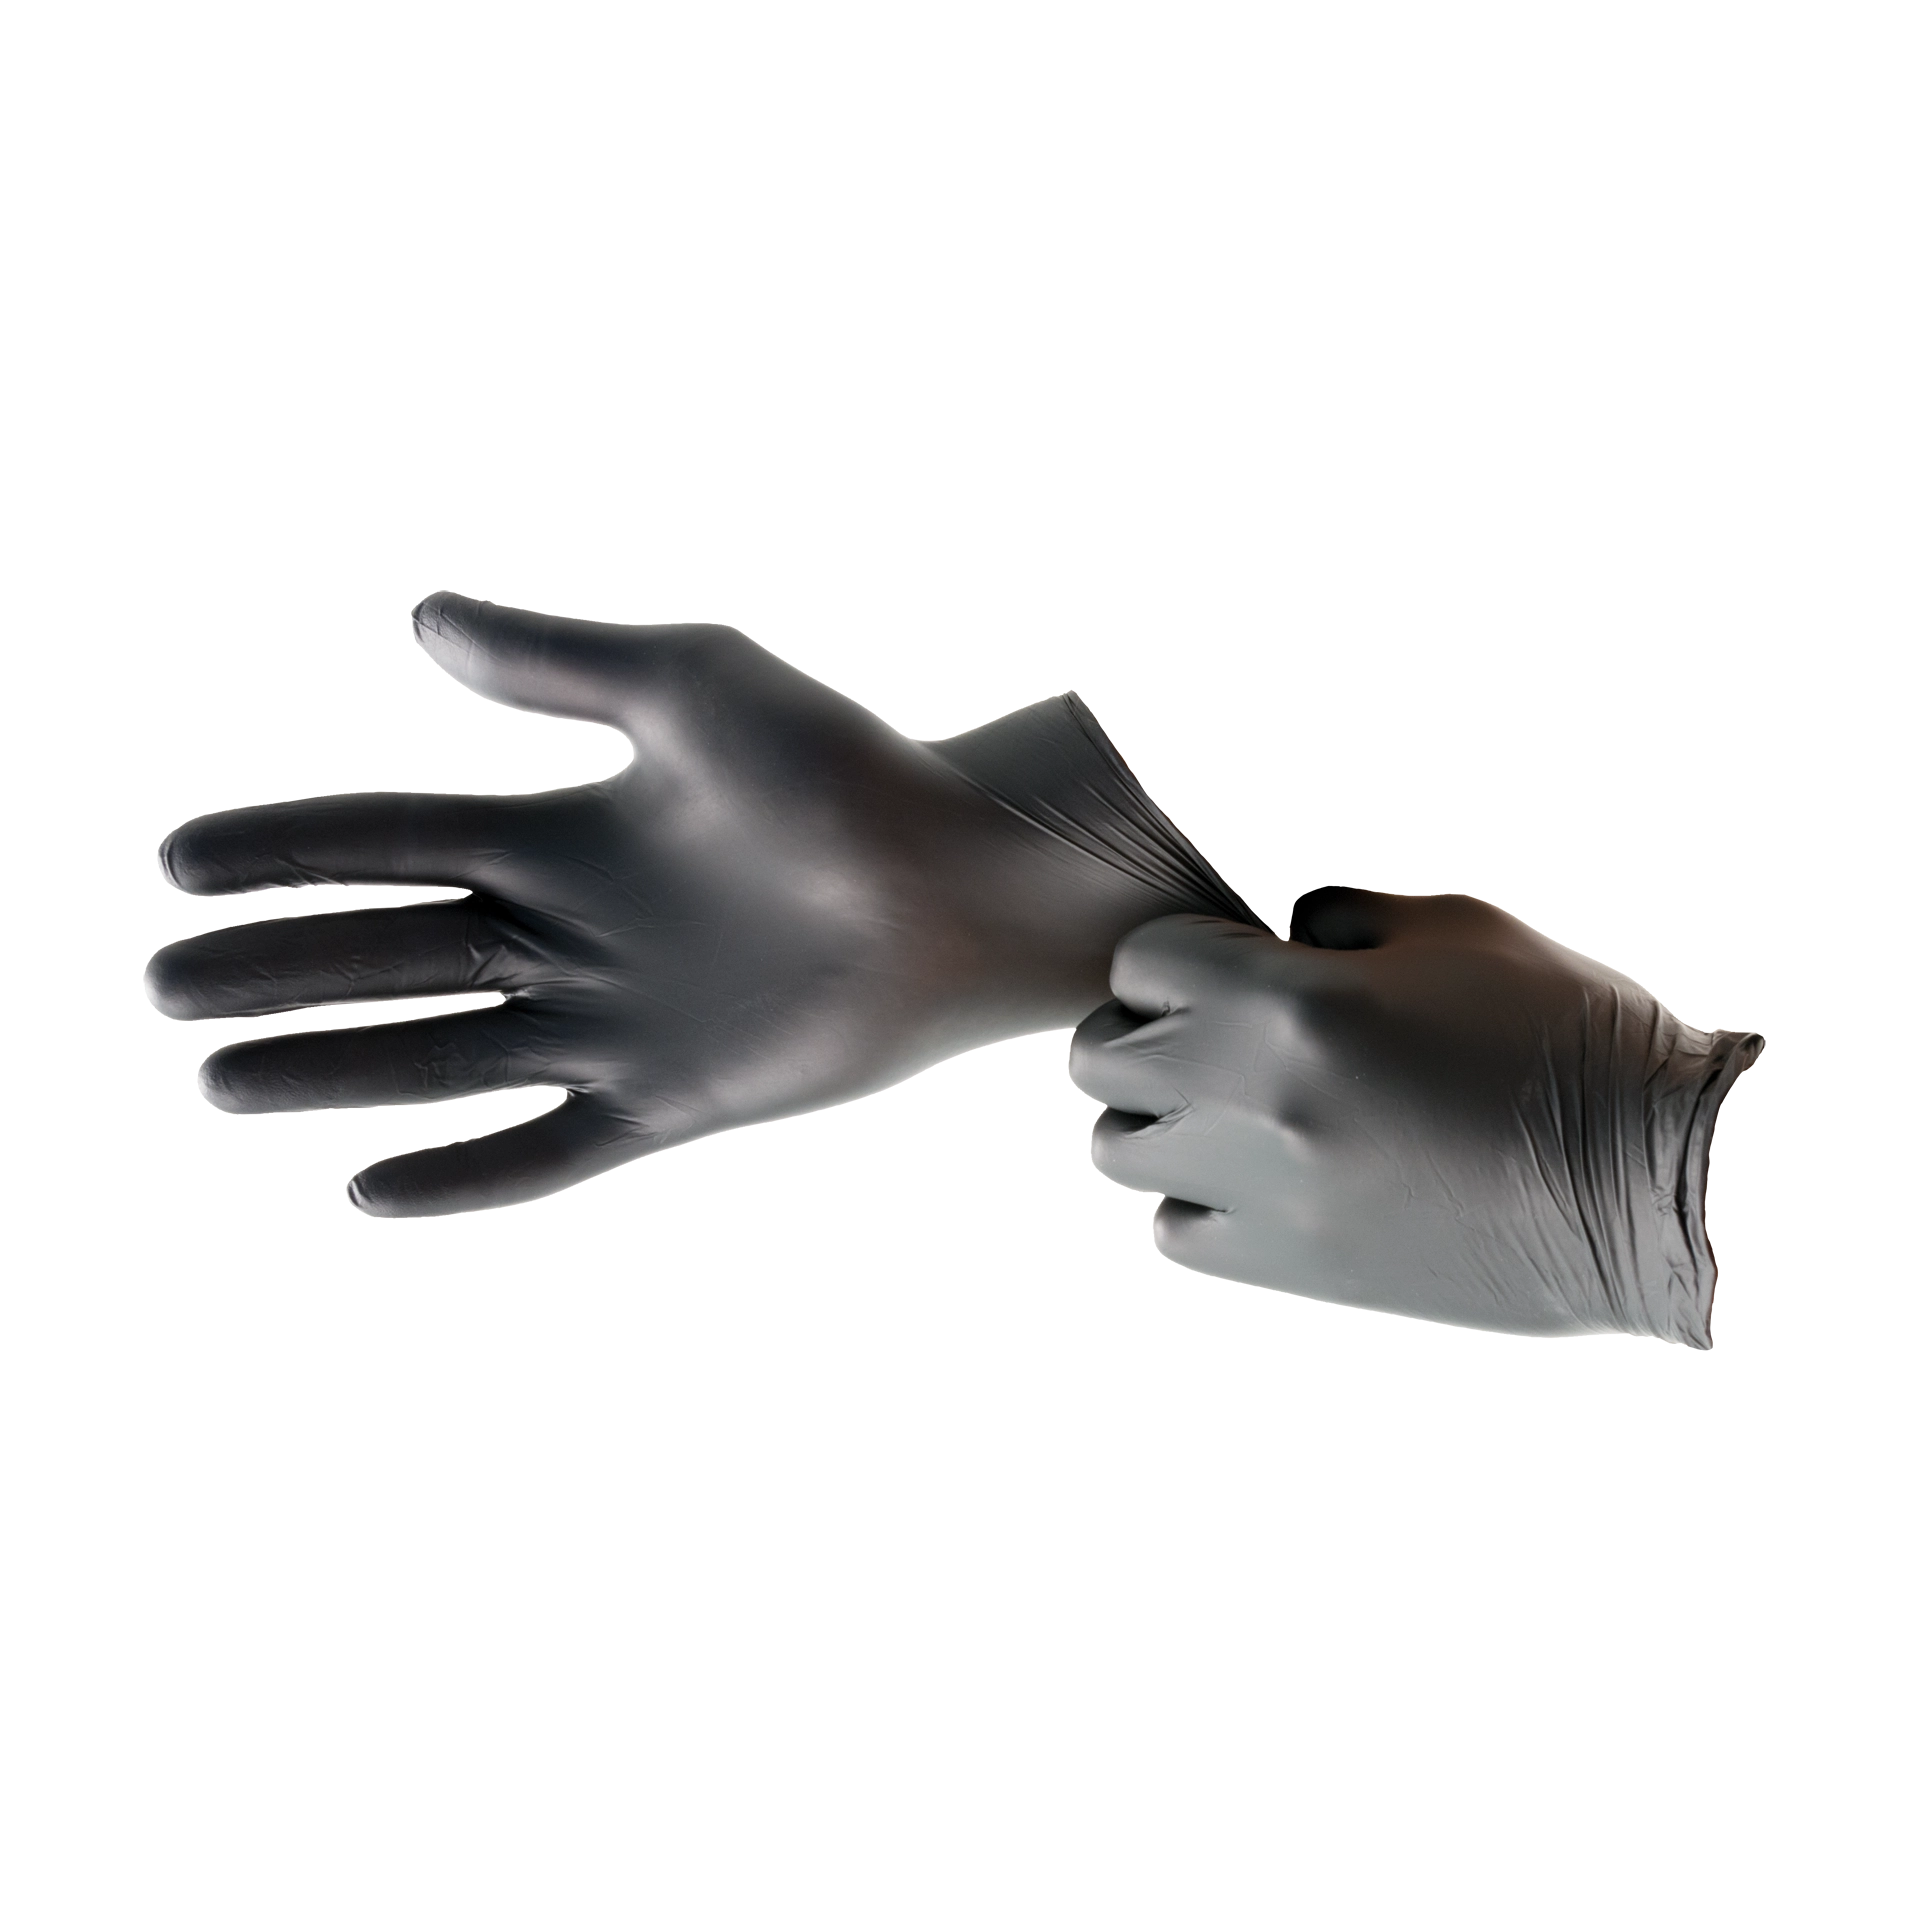 Handschuhe Nitril Größe M schwarz puder- und allergiefrei (100 Stk.)